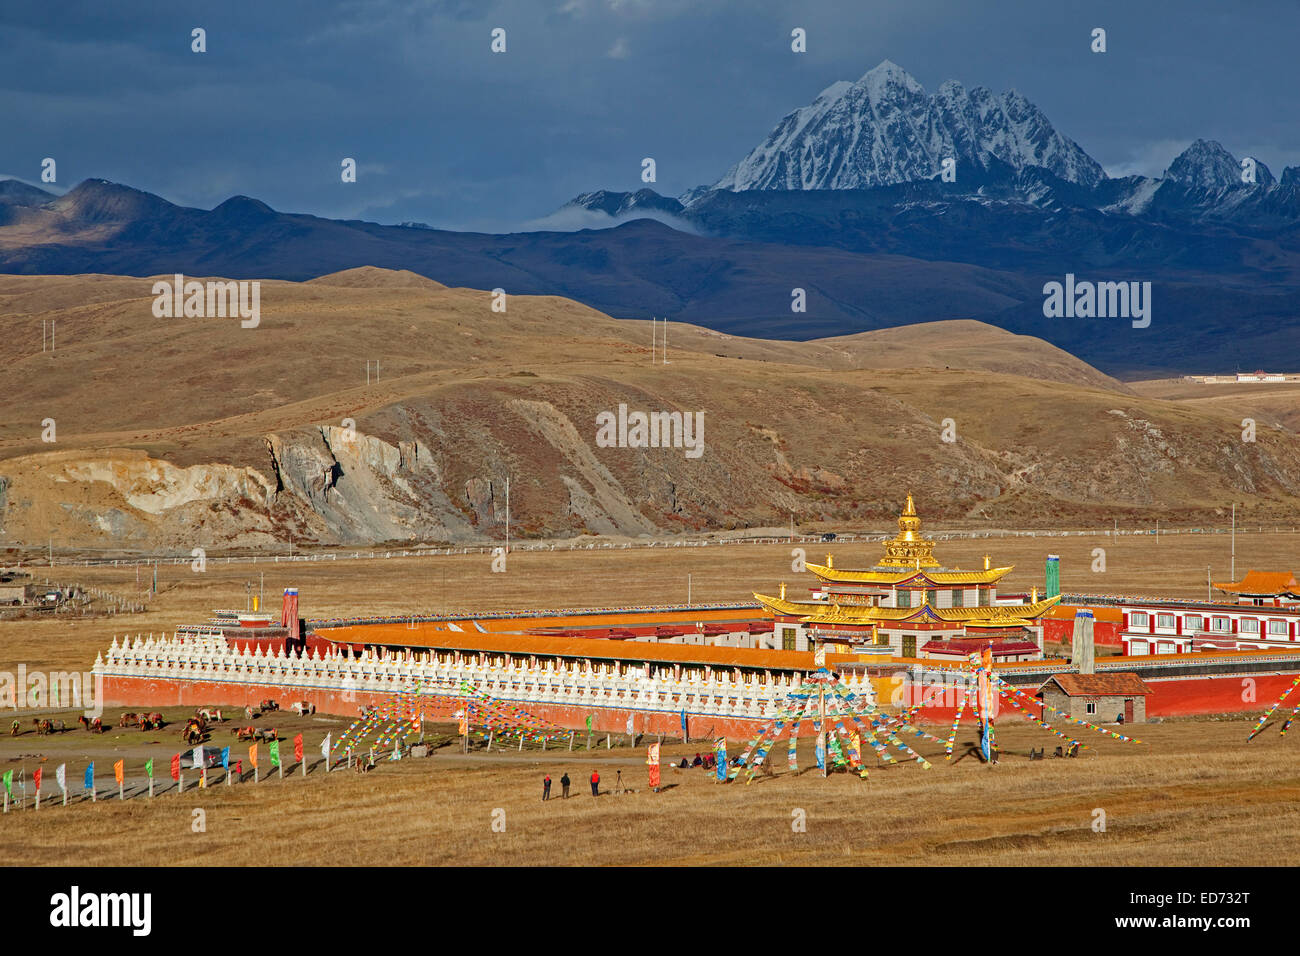 Tagong monastero tibetano monastero buddista e la montagna sacra, Mt. Yala / Zhara Lhaste, nella provincia di Sichuan, in Cina Foto Stock